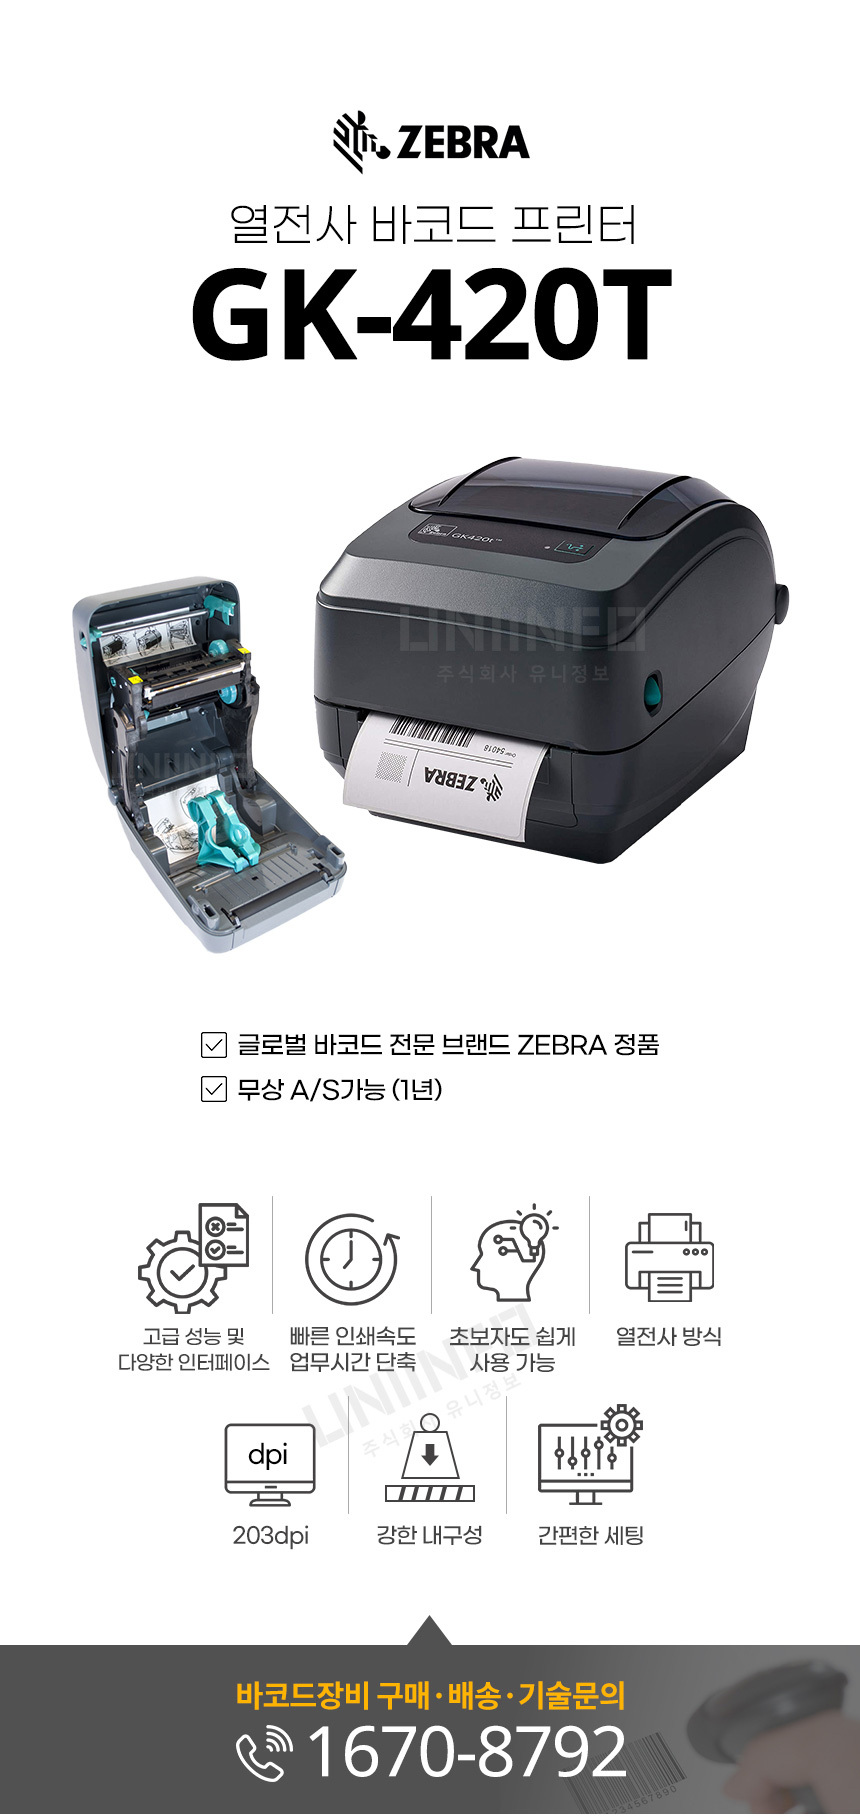 gk-420t 열전사 바코드 프린터 빠른 인쇄속도 업무시간 단축 203dpi 강한 내구성 간편한 세팅